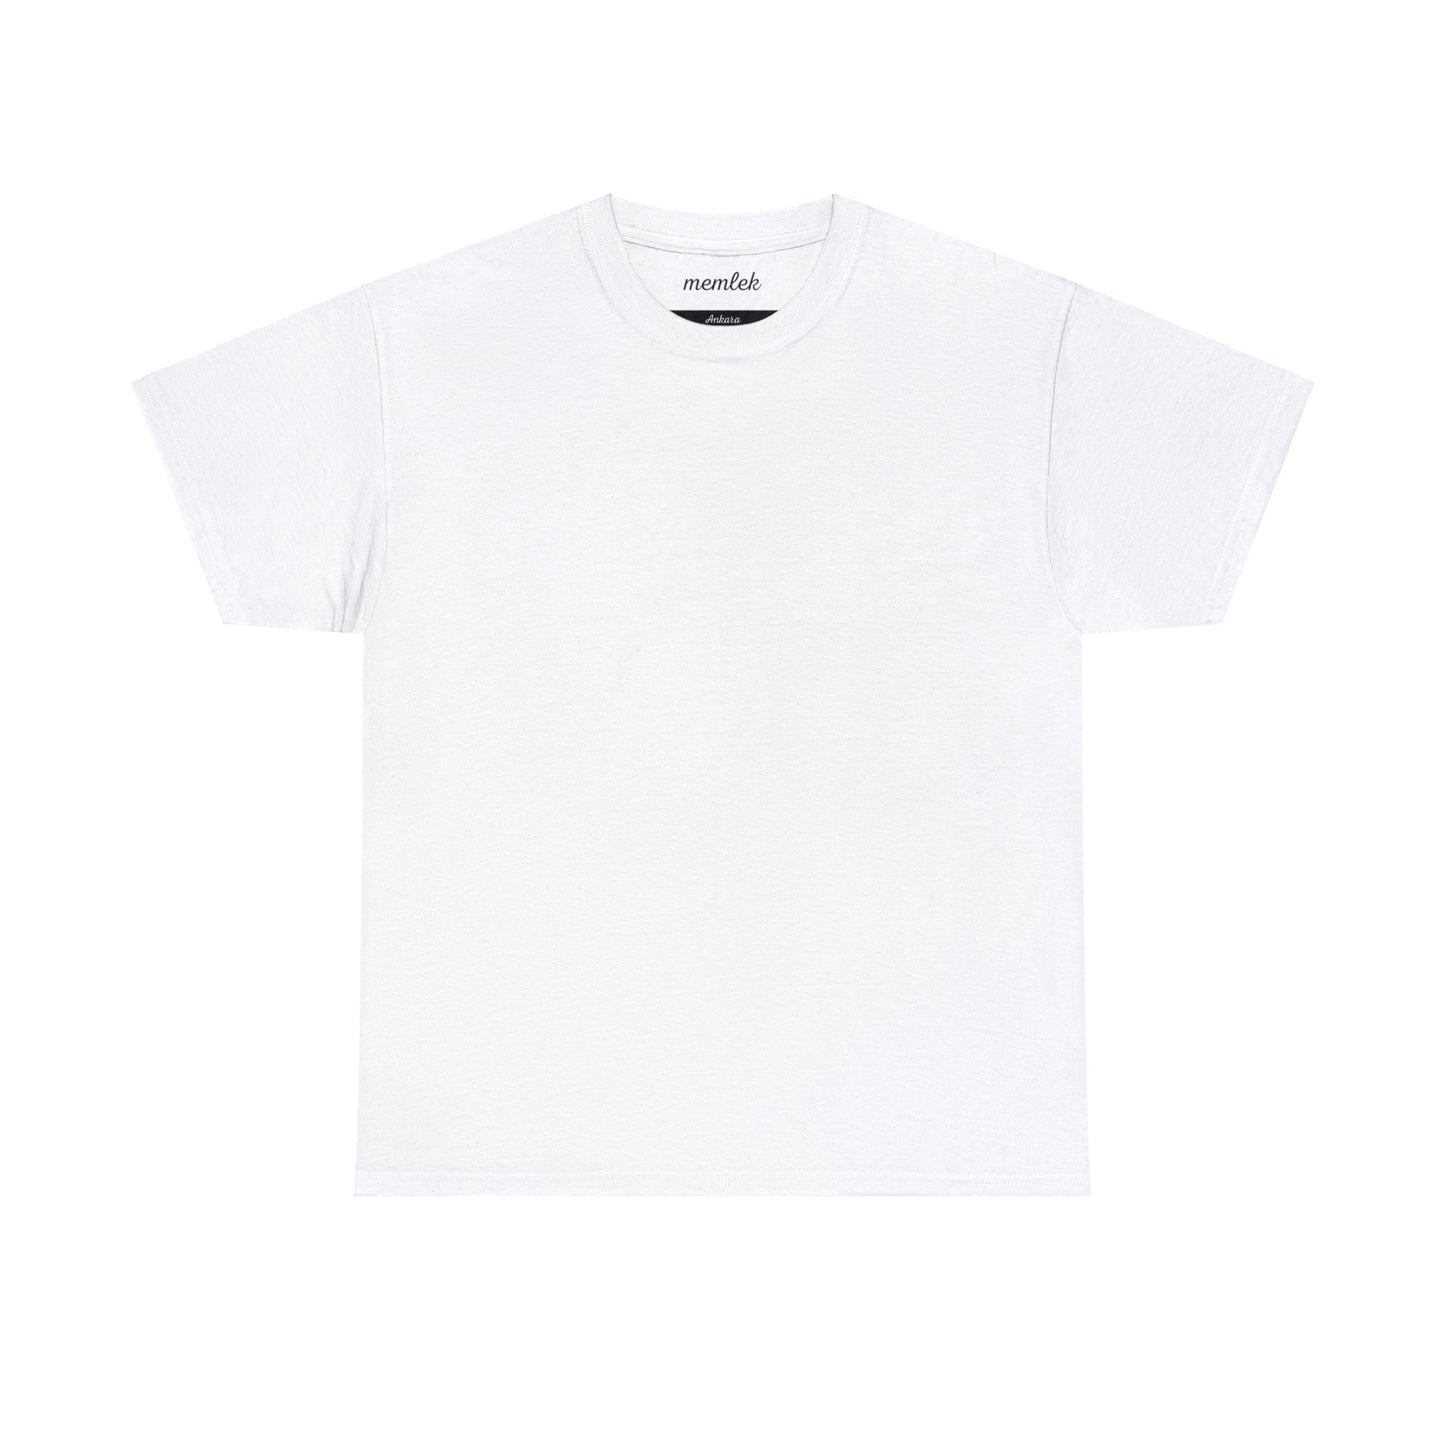 Kurt - 06 Ankara - T-Shirt - Back Print - Black/White